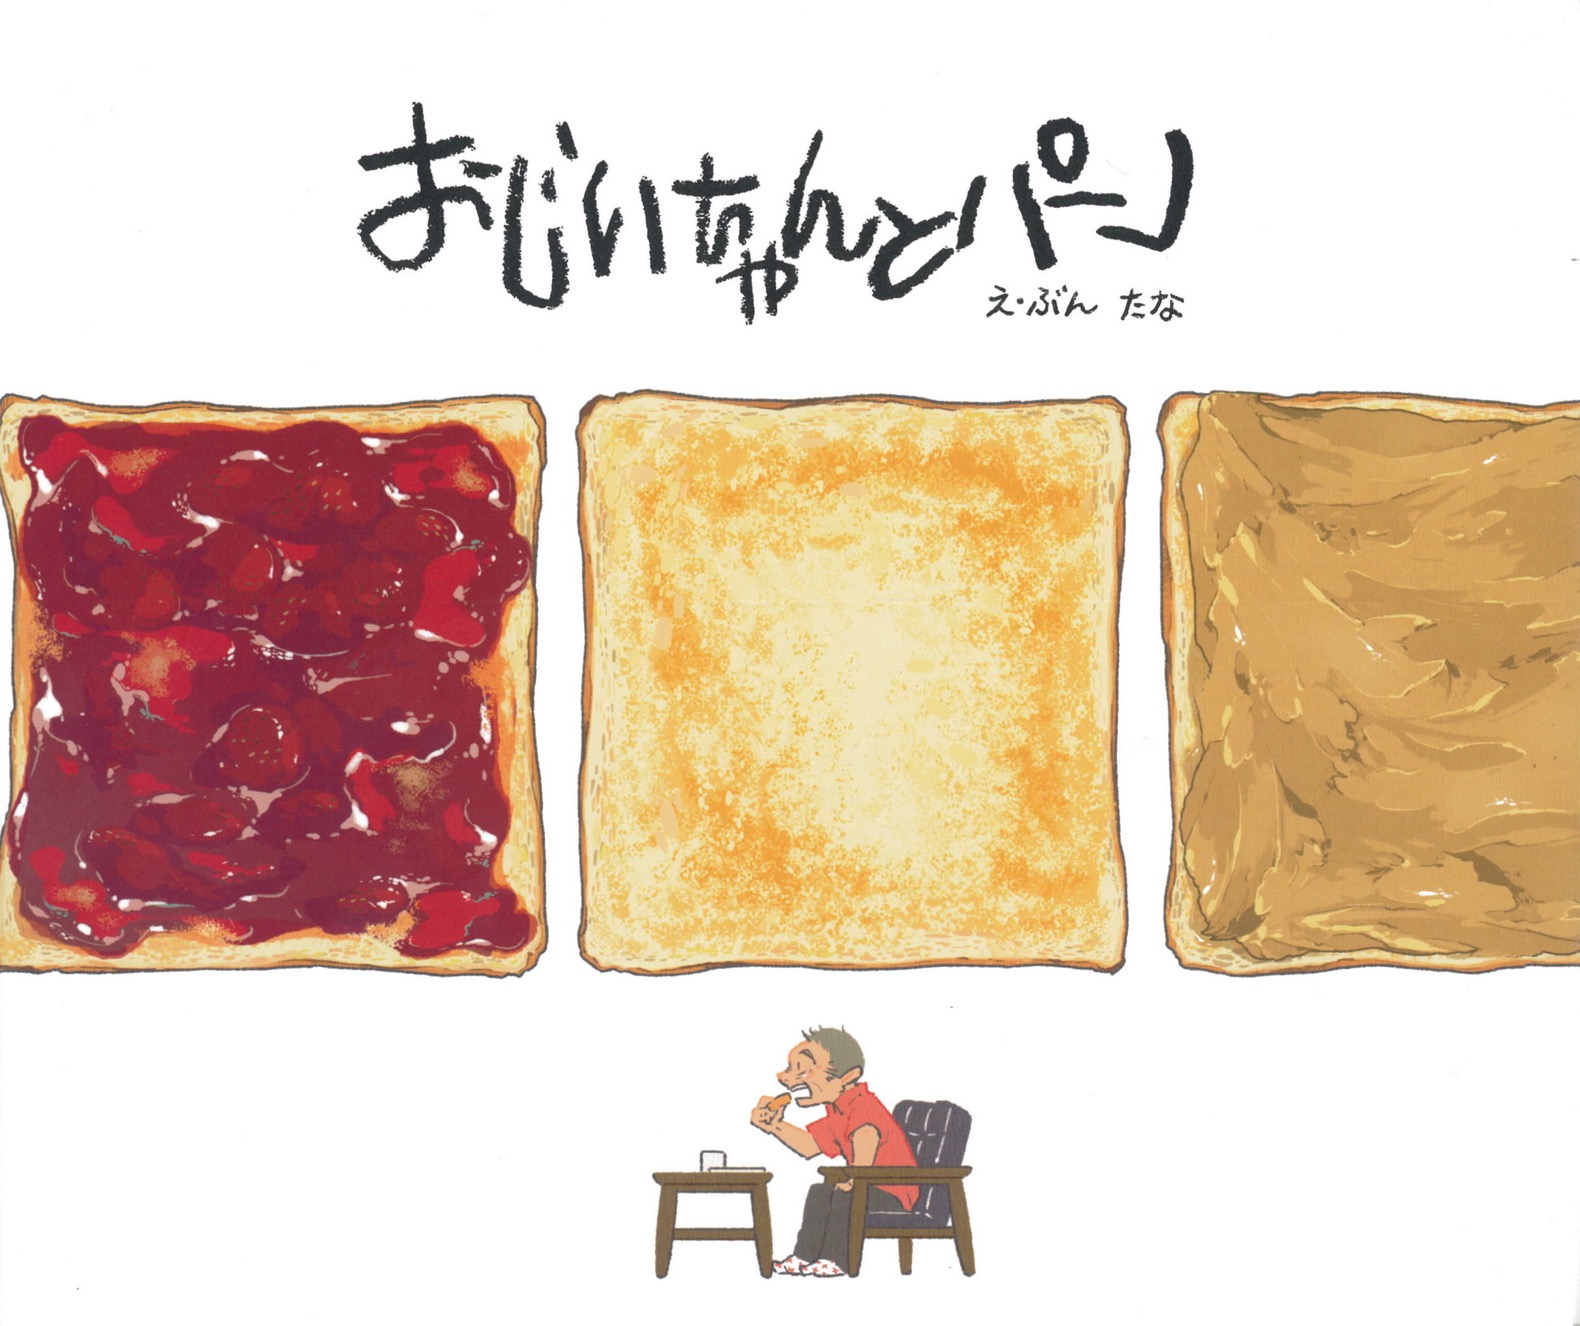 絵本「おじいちゃんとパン」の表紙